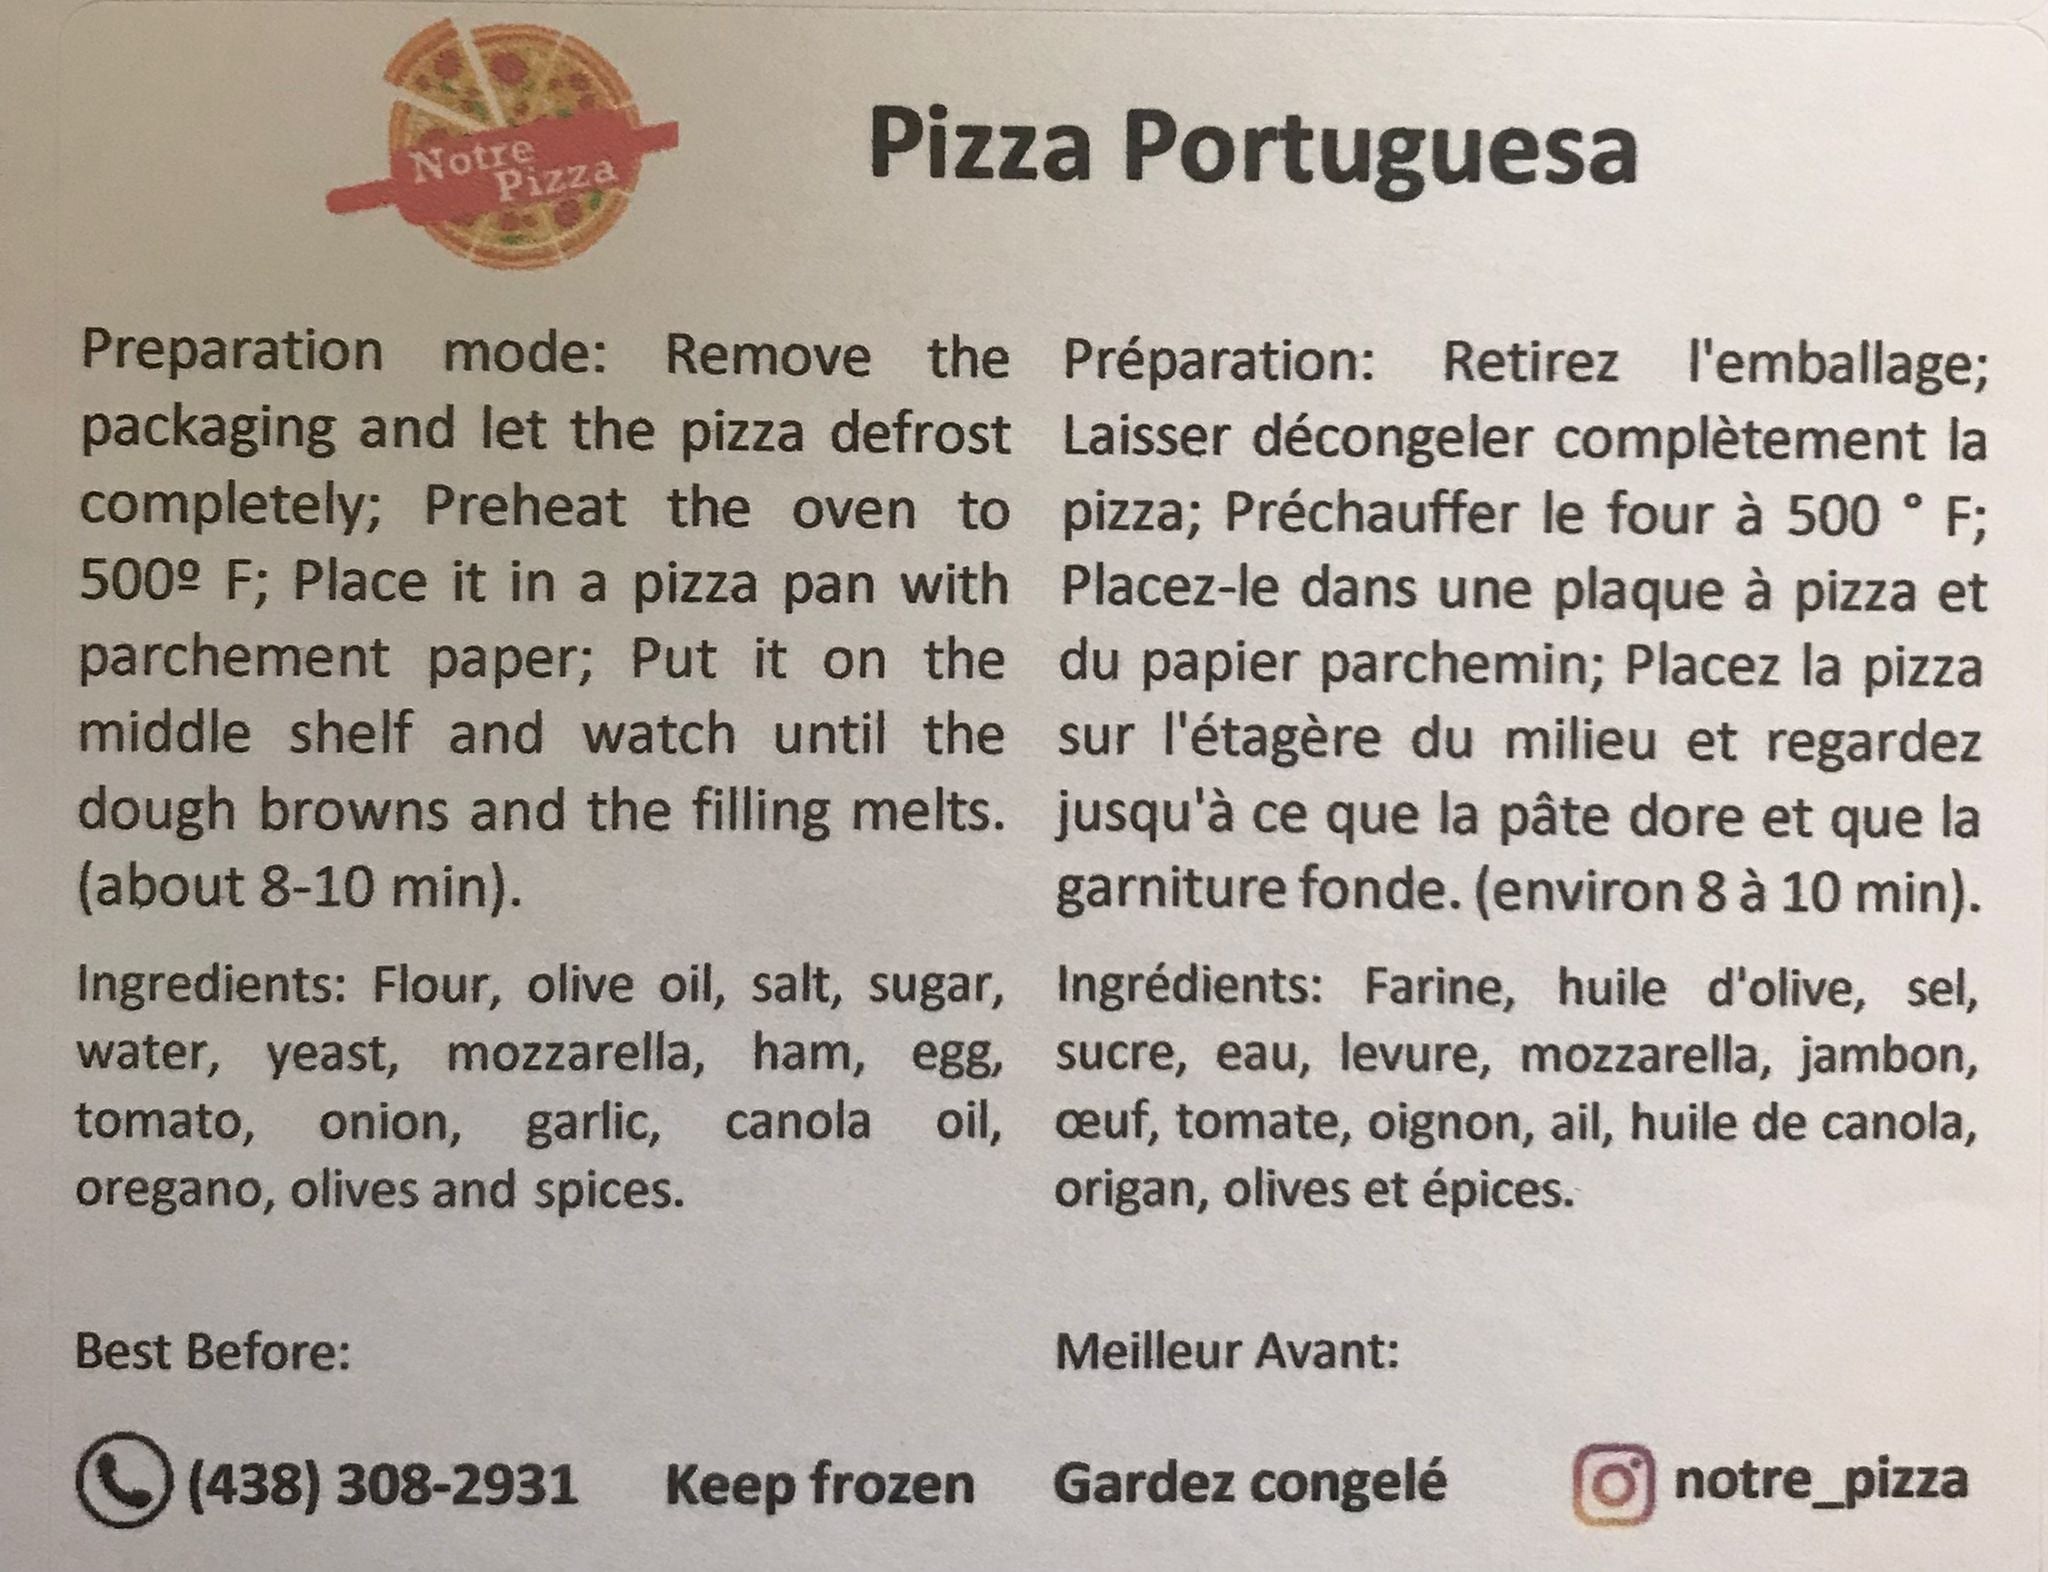 NOTRE PIZZA - Pizza Caseira - Portuguesa